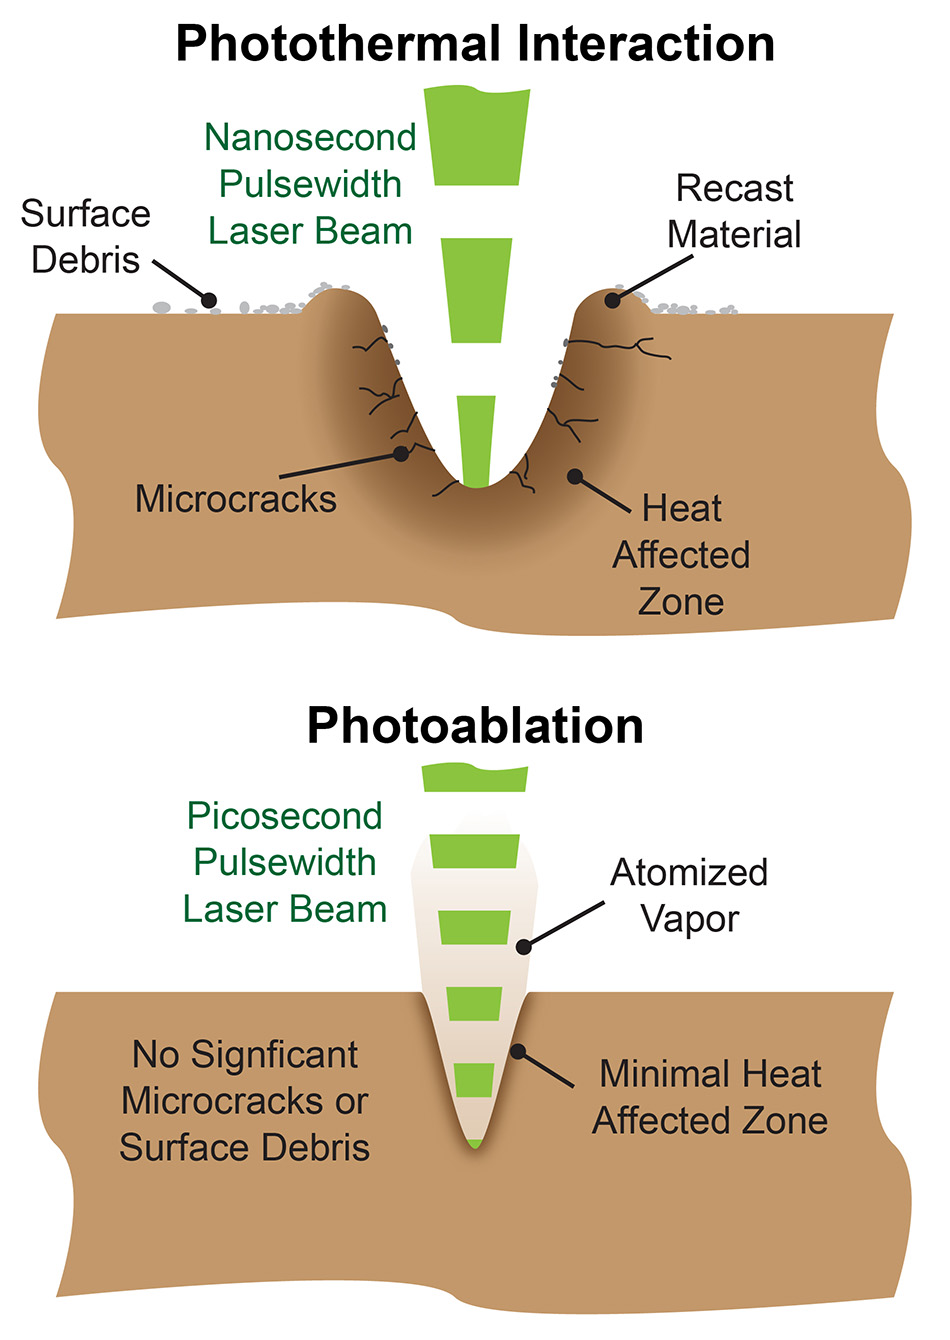 光熱レーザアブレーション加工方法と光アブレーションレーザ加工方法の違い